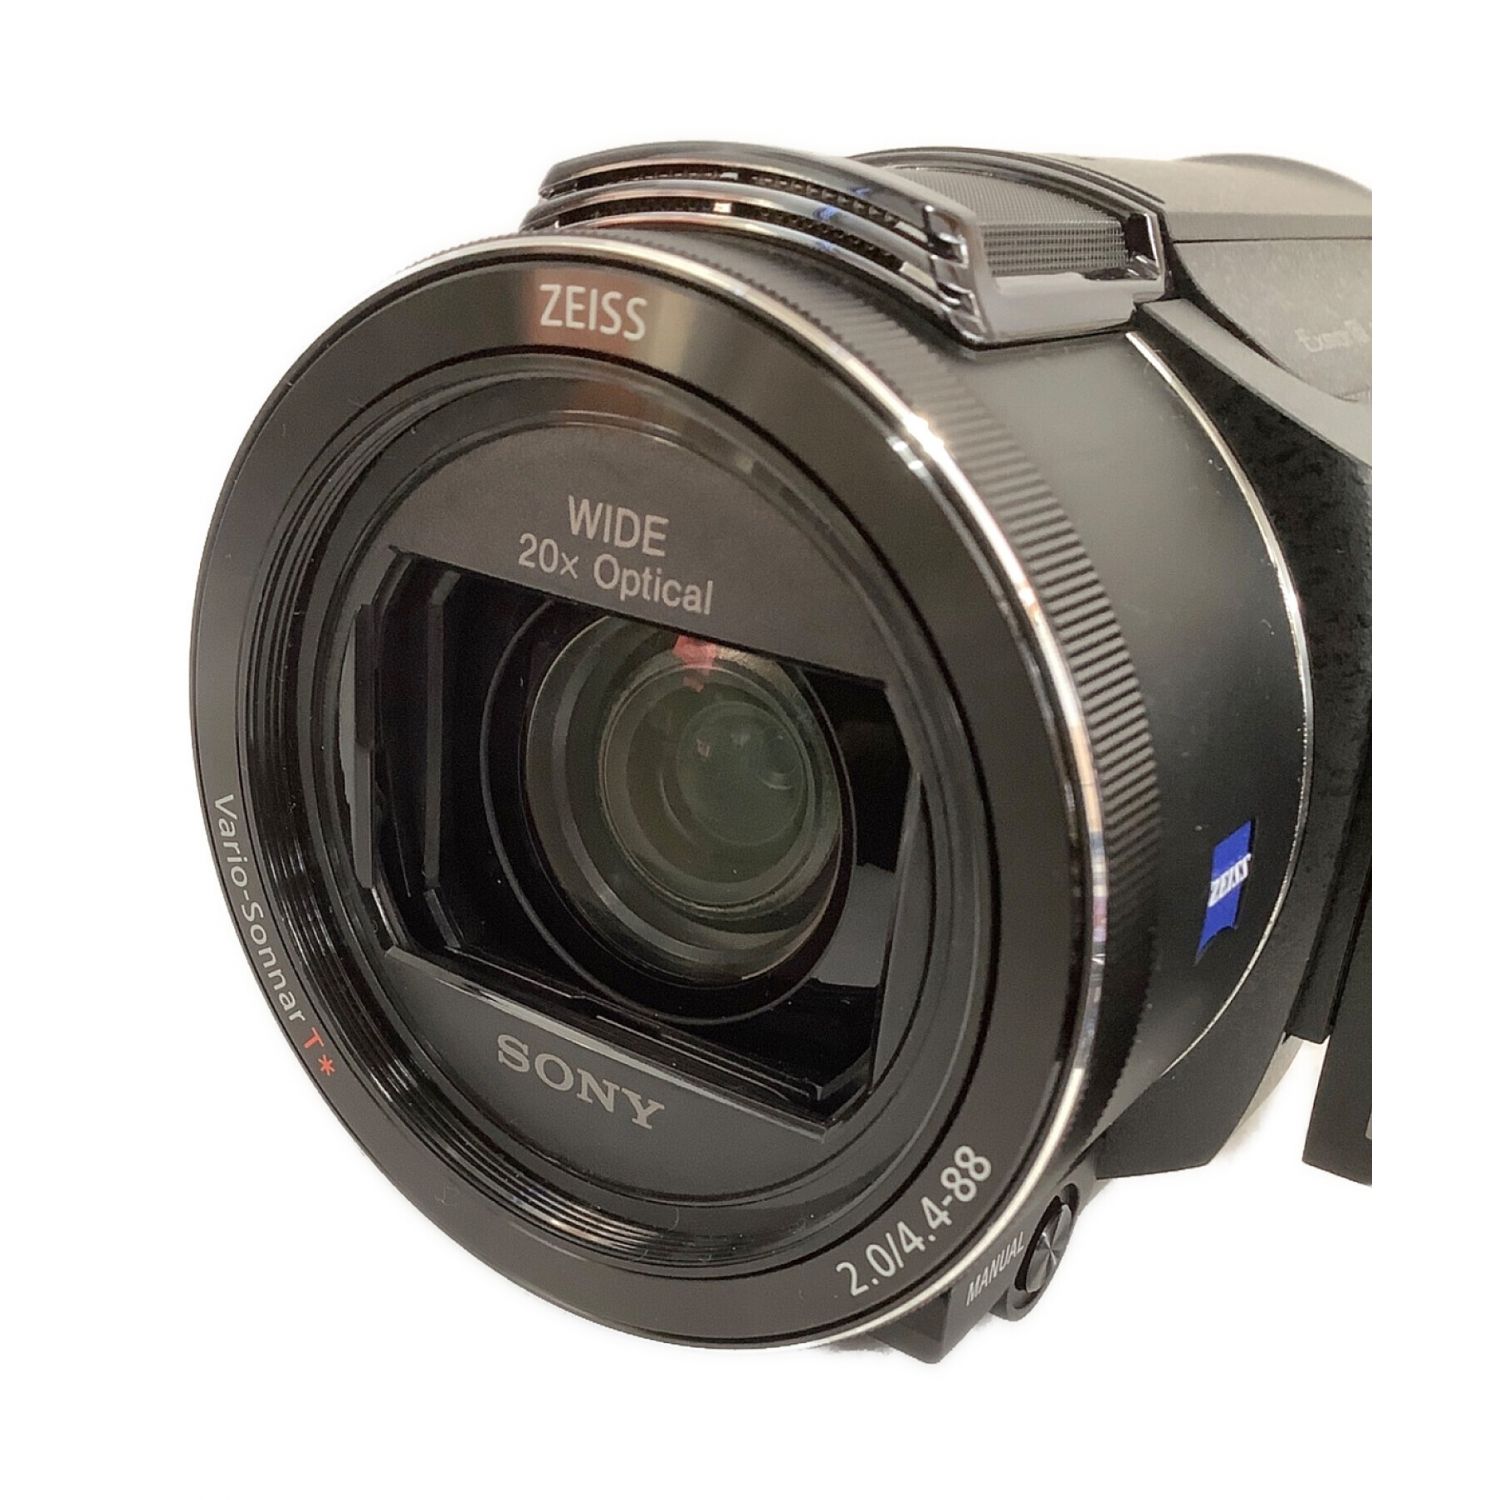 SONY (ソニー) デジタル4Kビデオカメラ 撮影時間150 分 829万画素 SD 